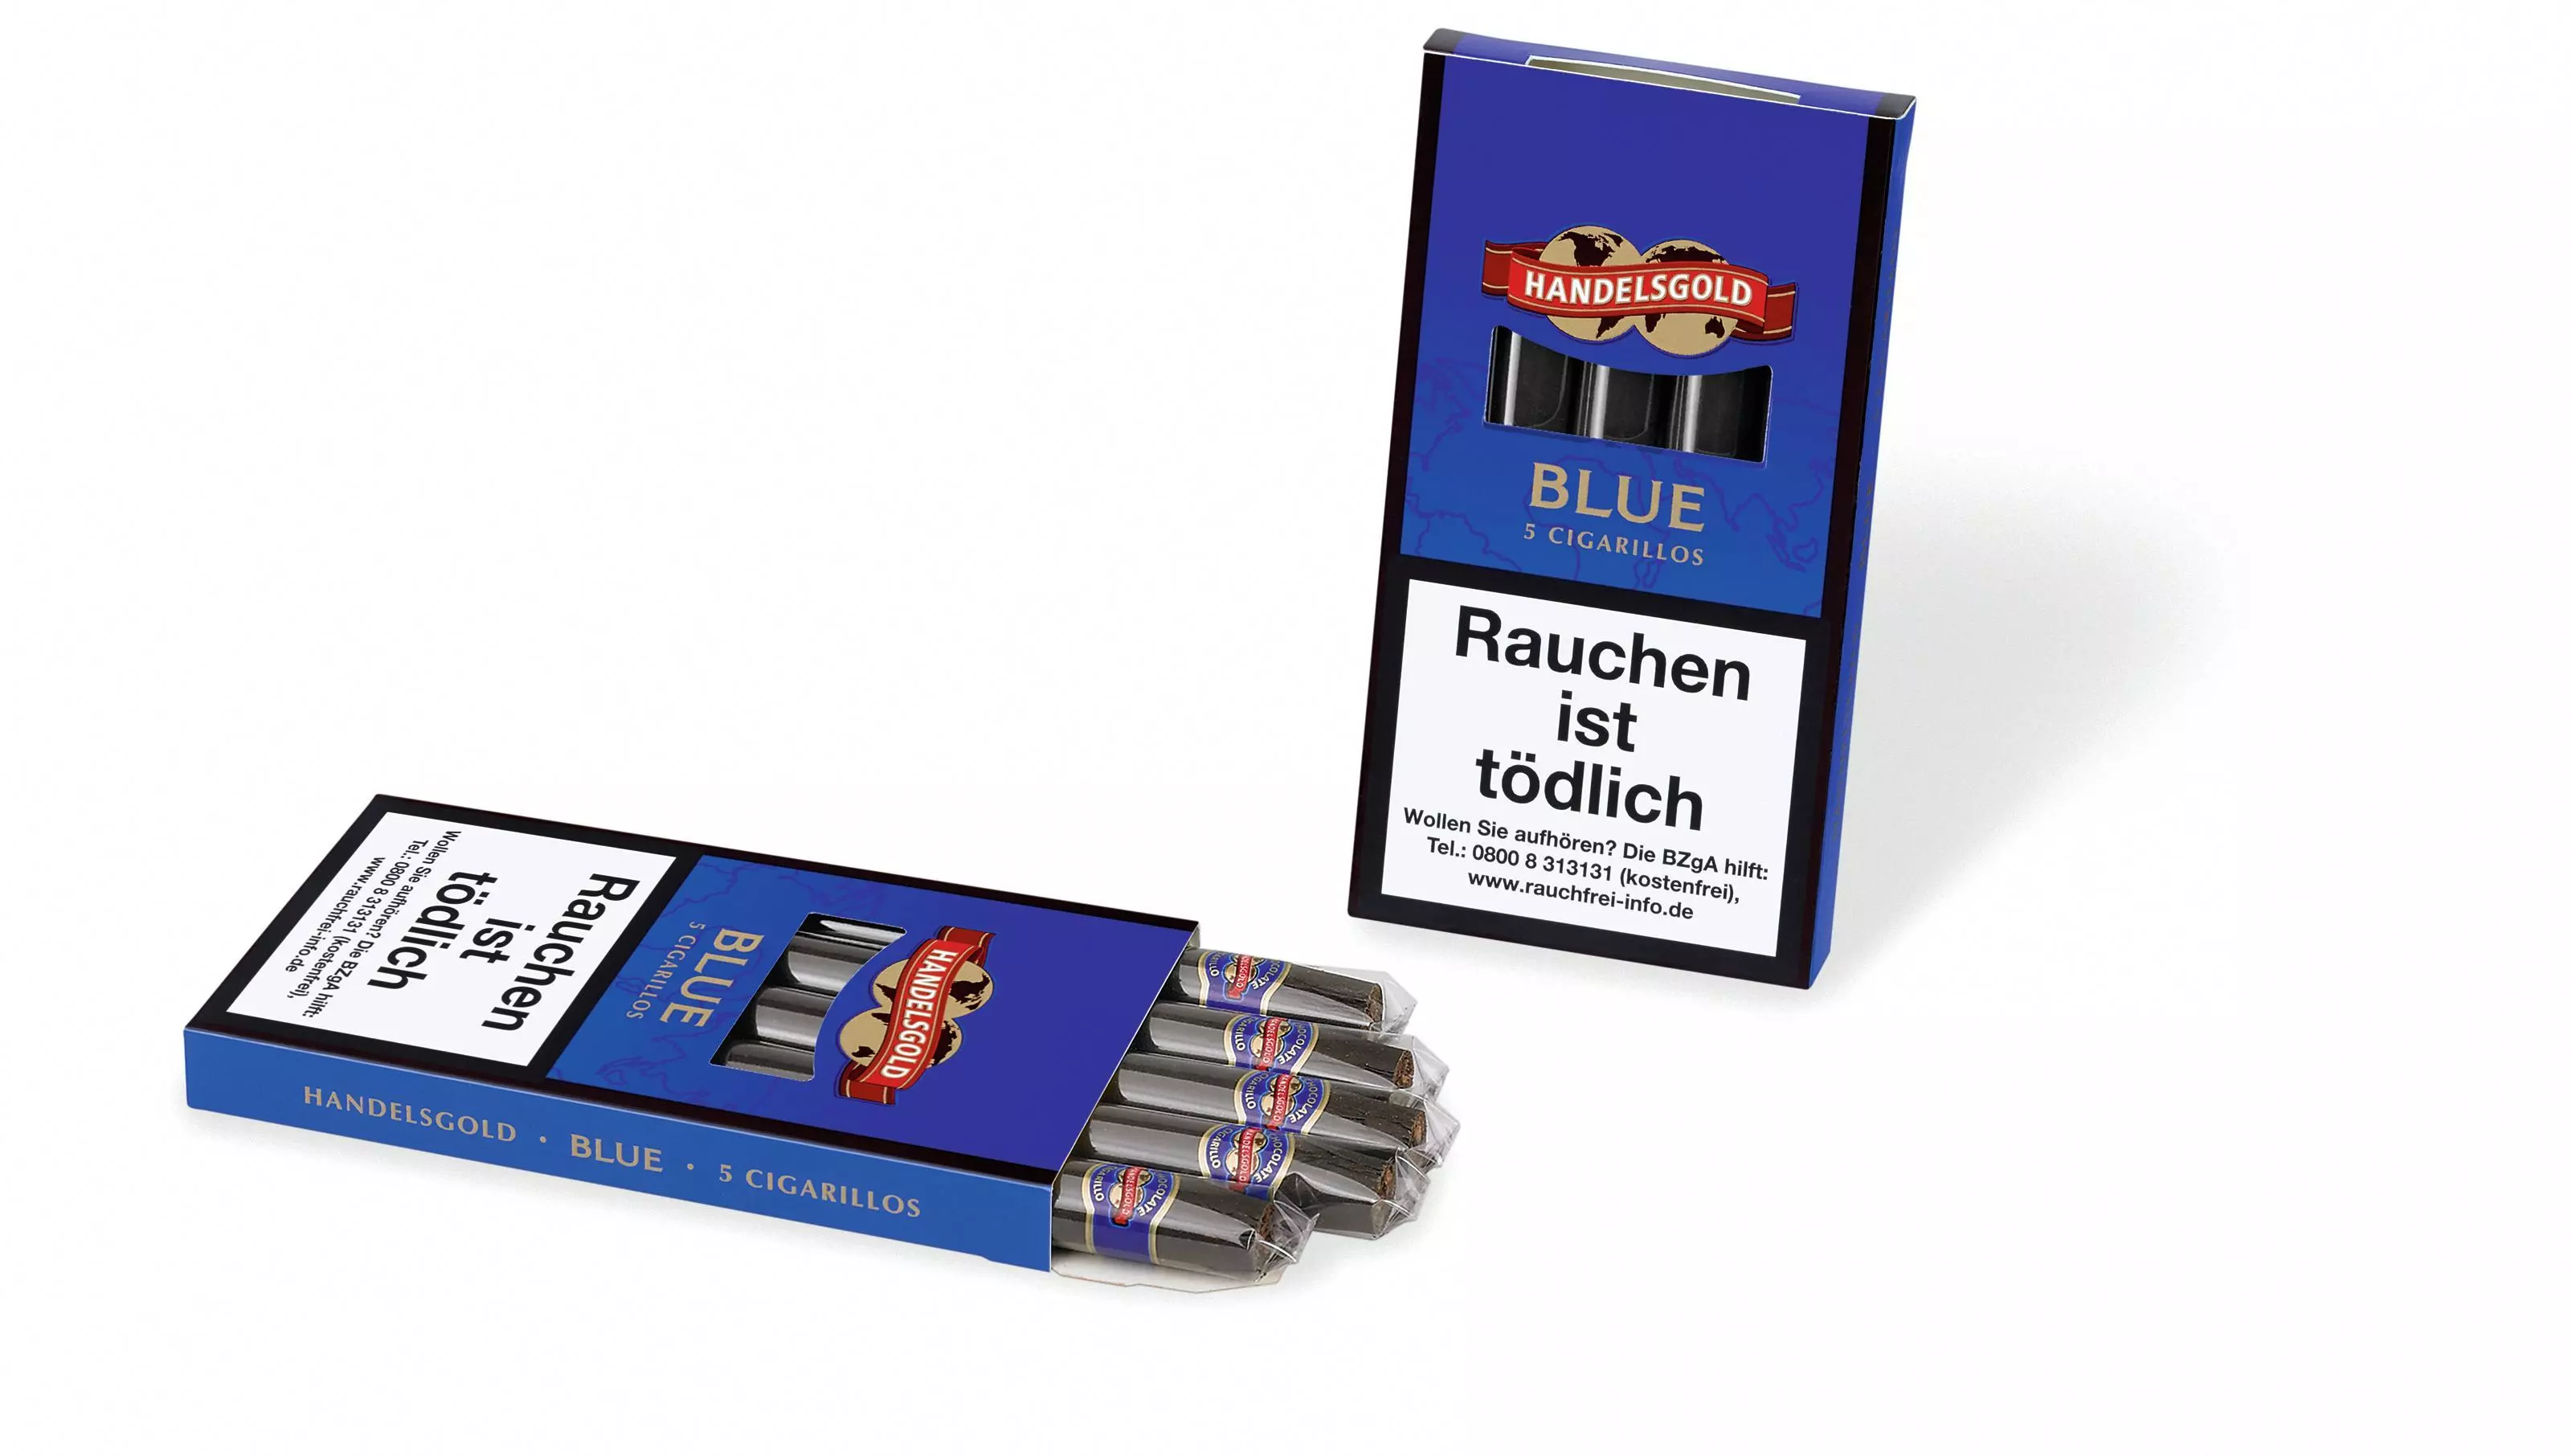 Handelsgold Sweet Blue Nr. 207 10 x 5 Zigarillos